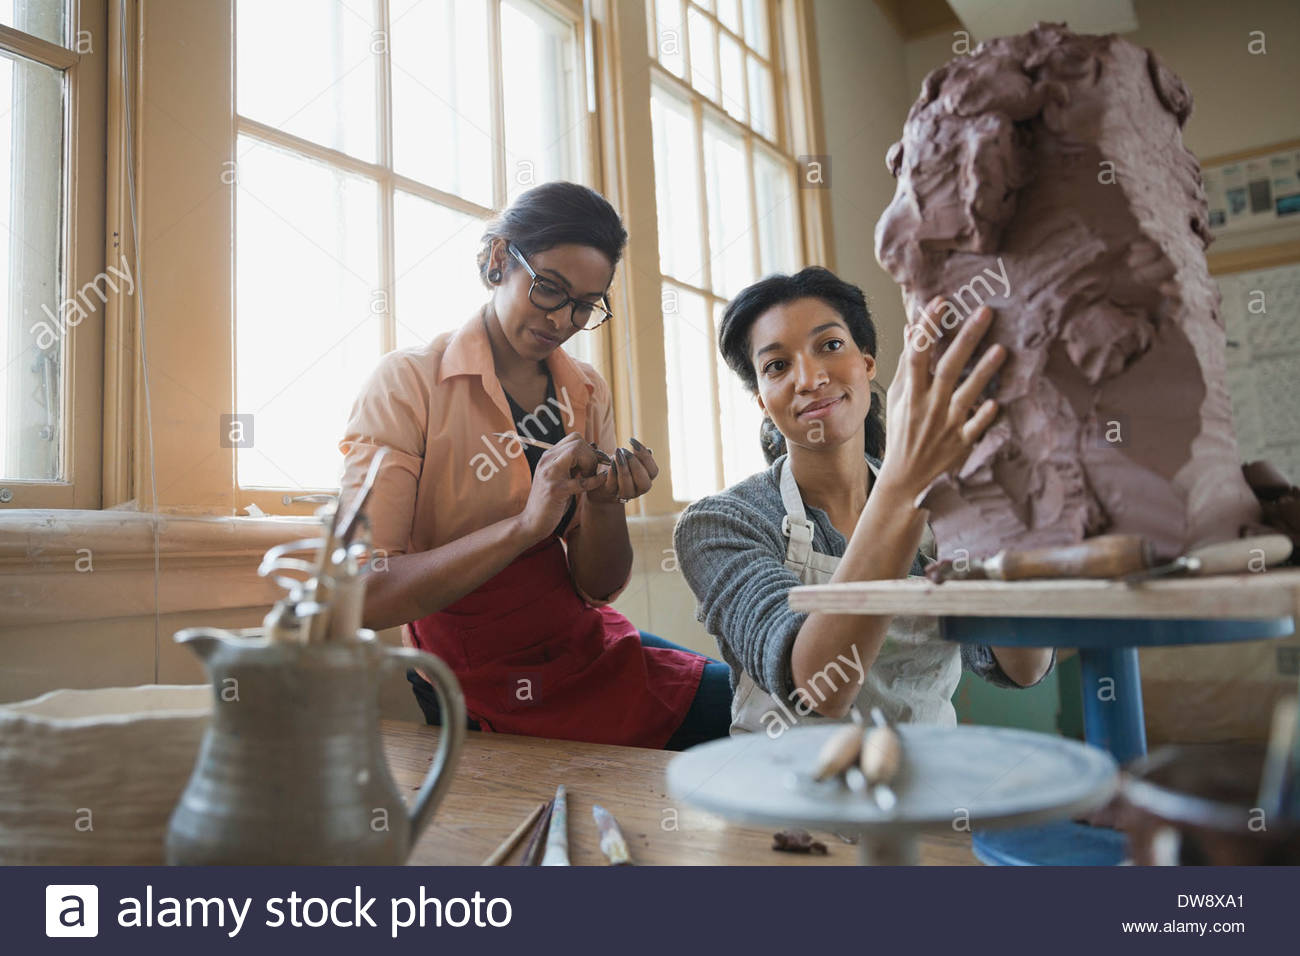 Female friends sculpting in art studio Stock Photo